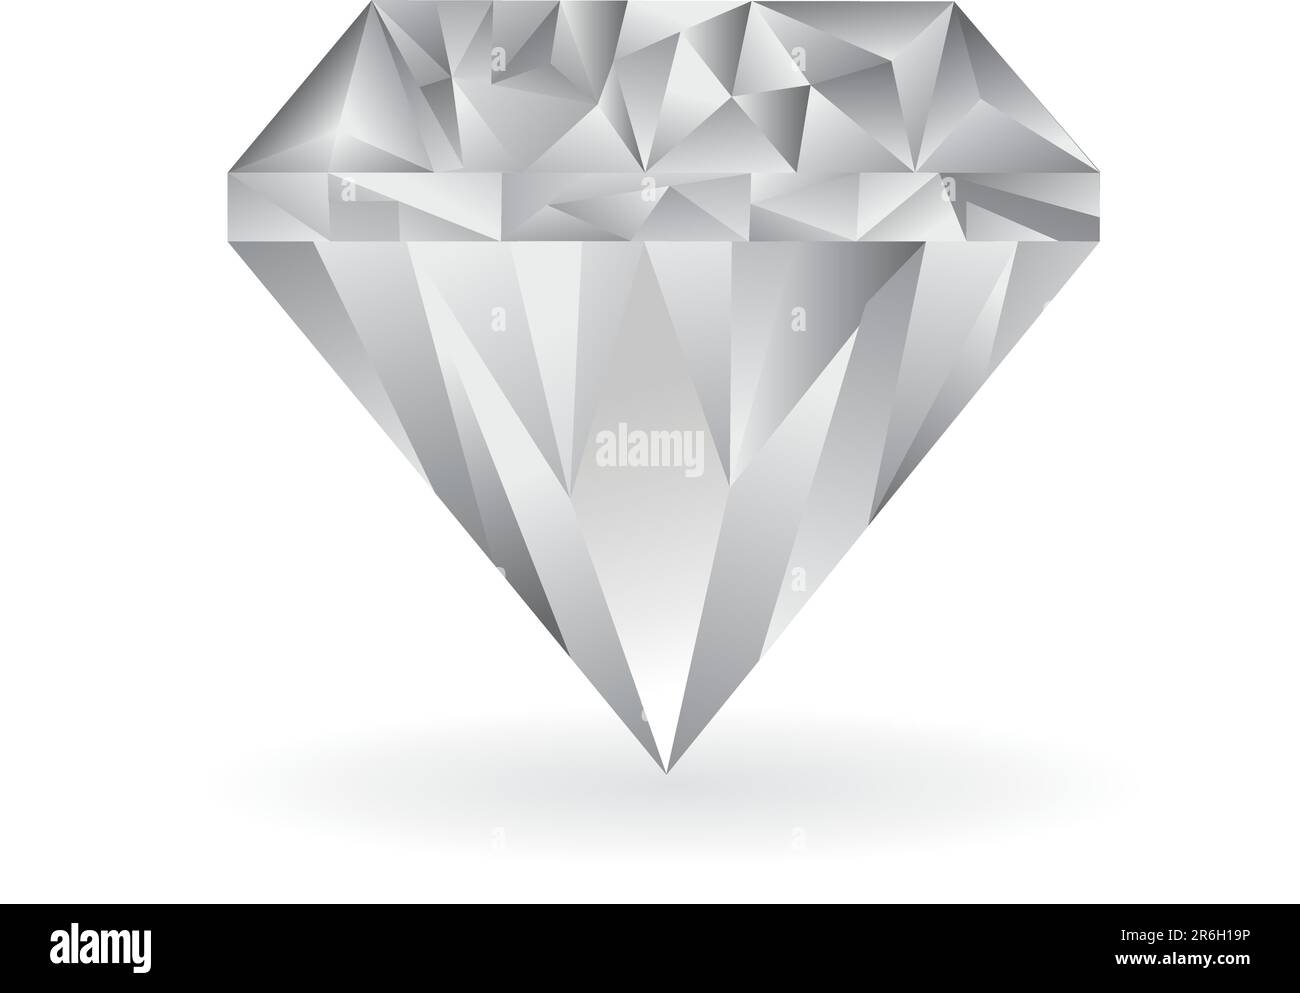 illustrazione vettoriale a diamante freddo su sfondo bianco Illustrazione Vettoriale